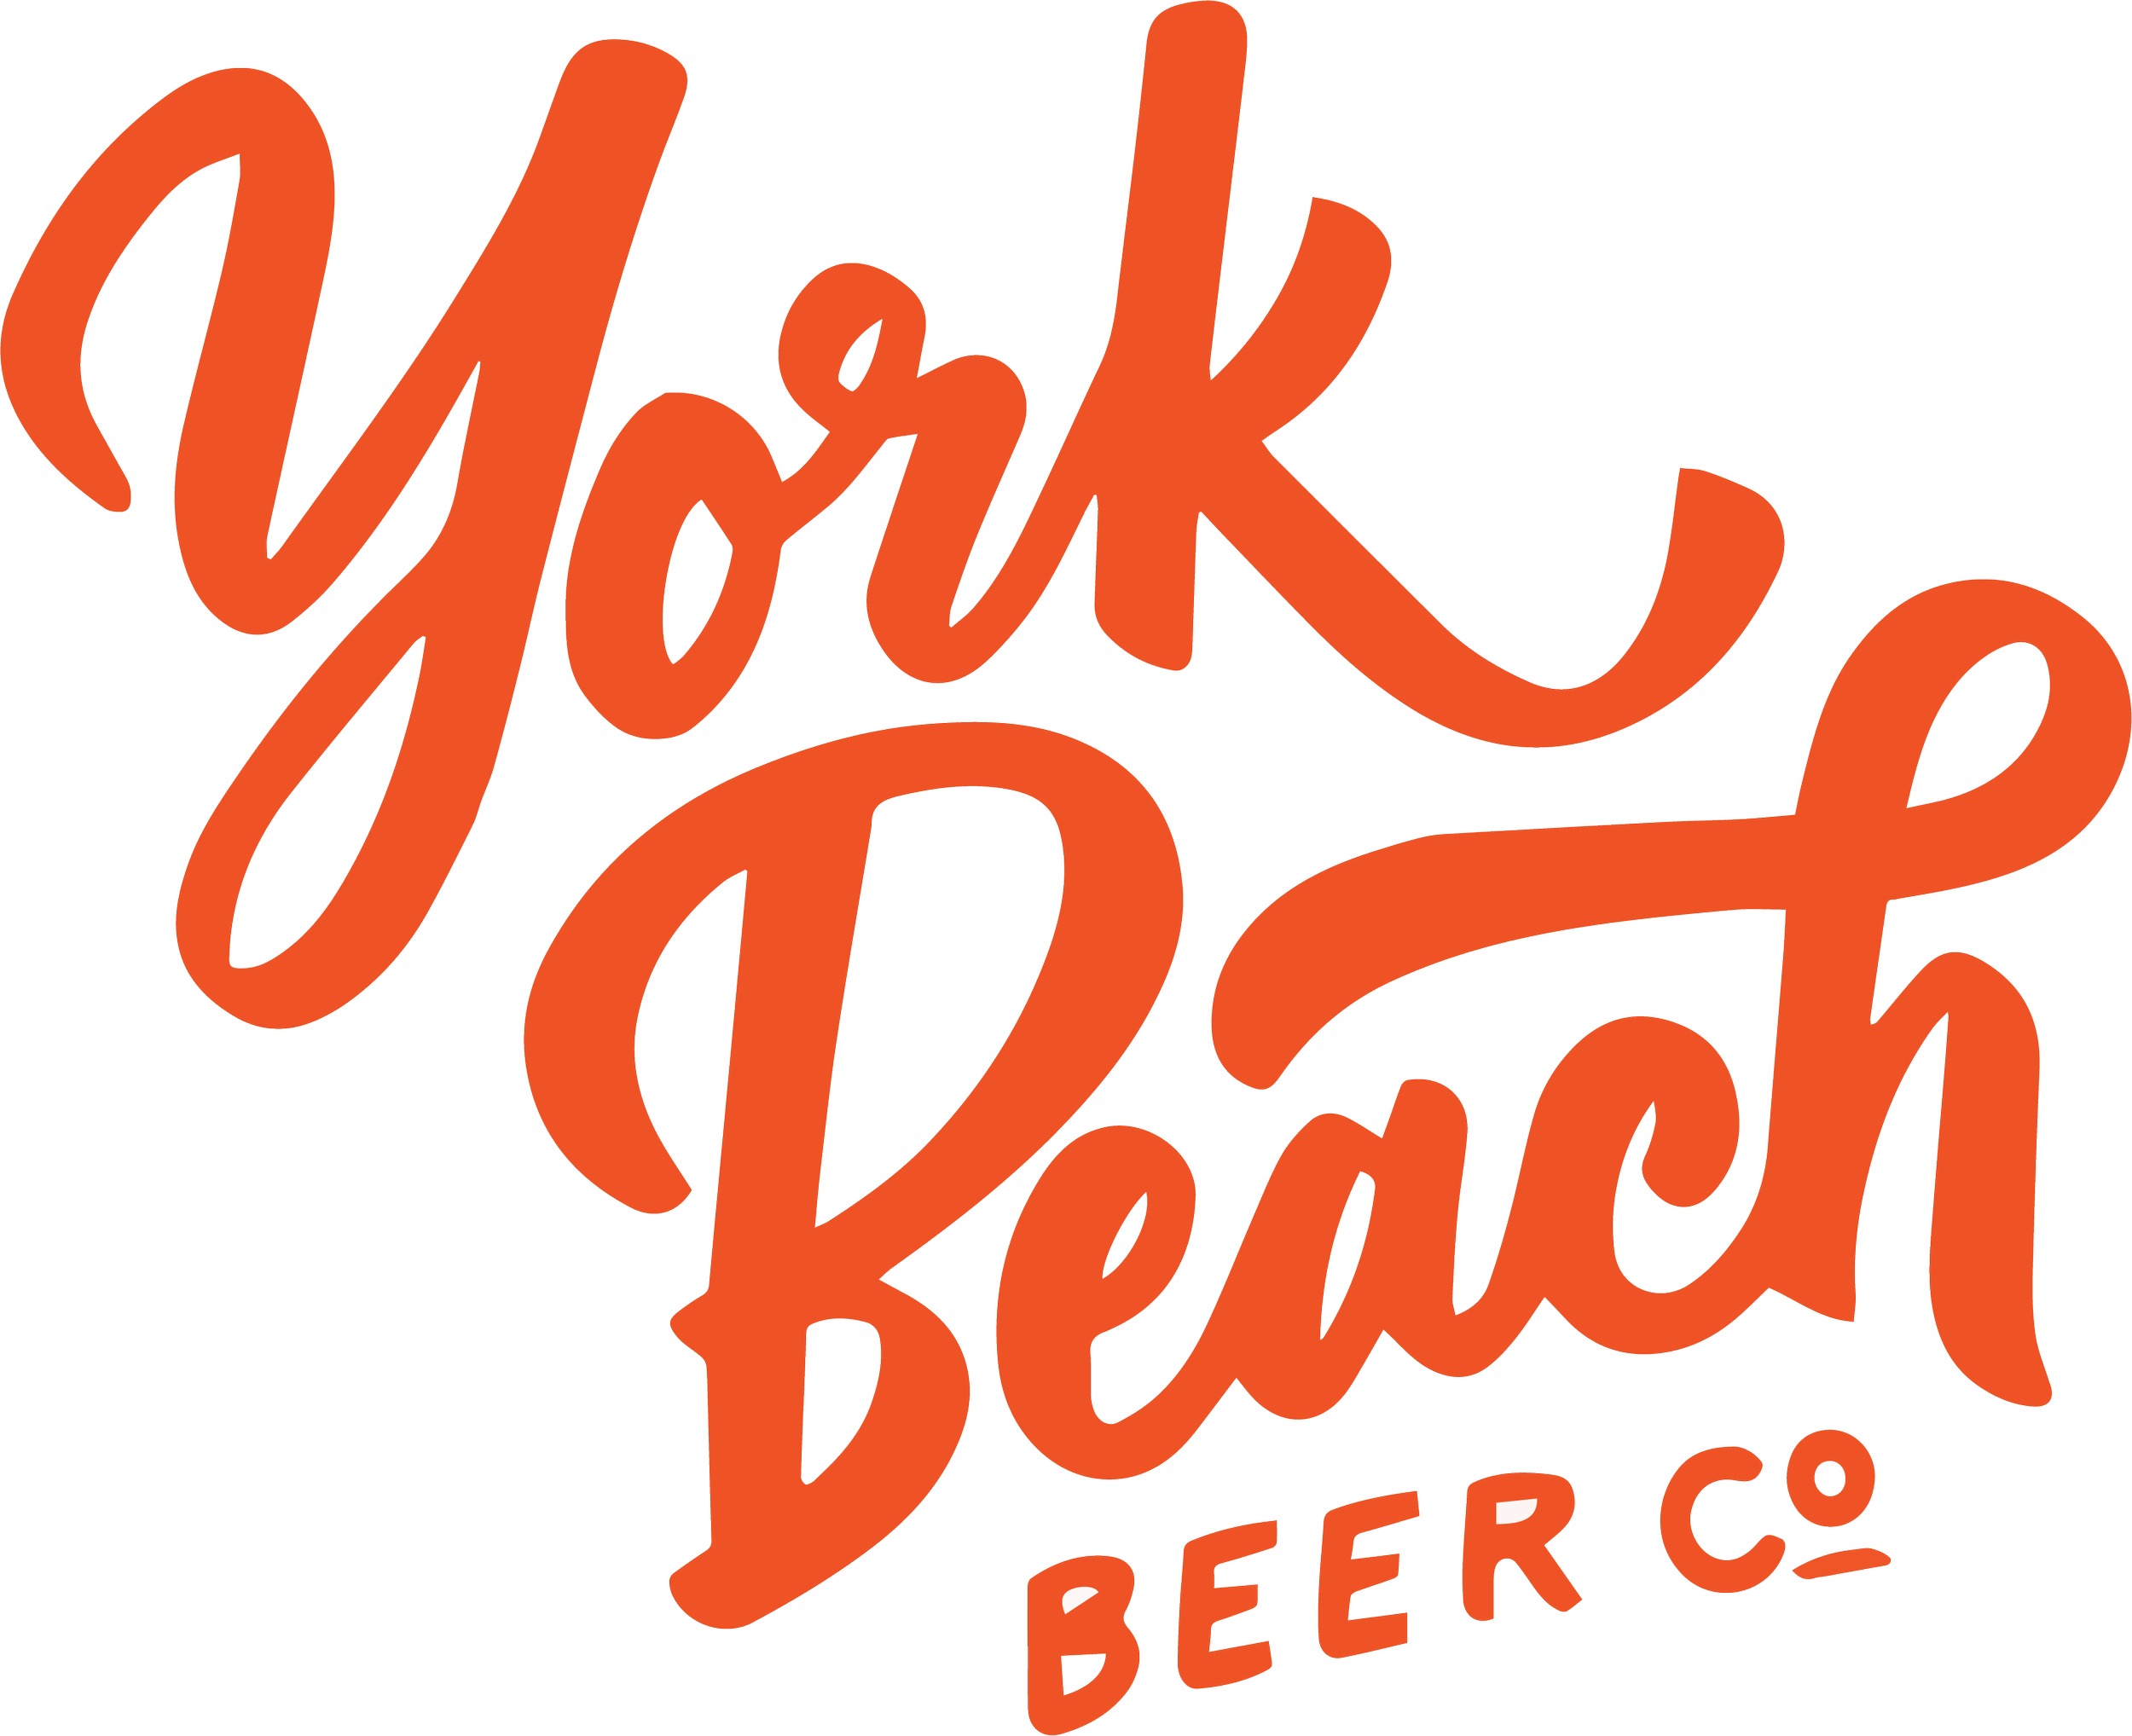 York Beech Beer.png